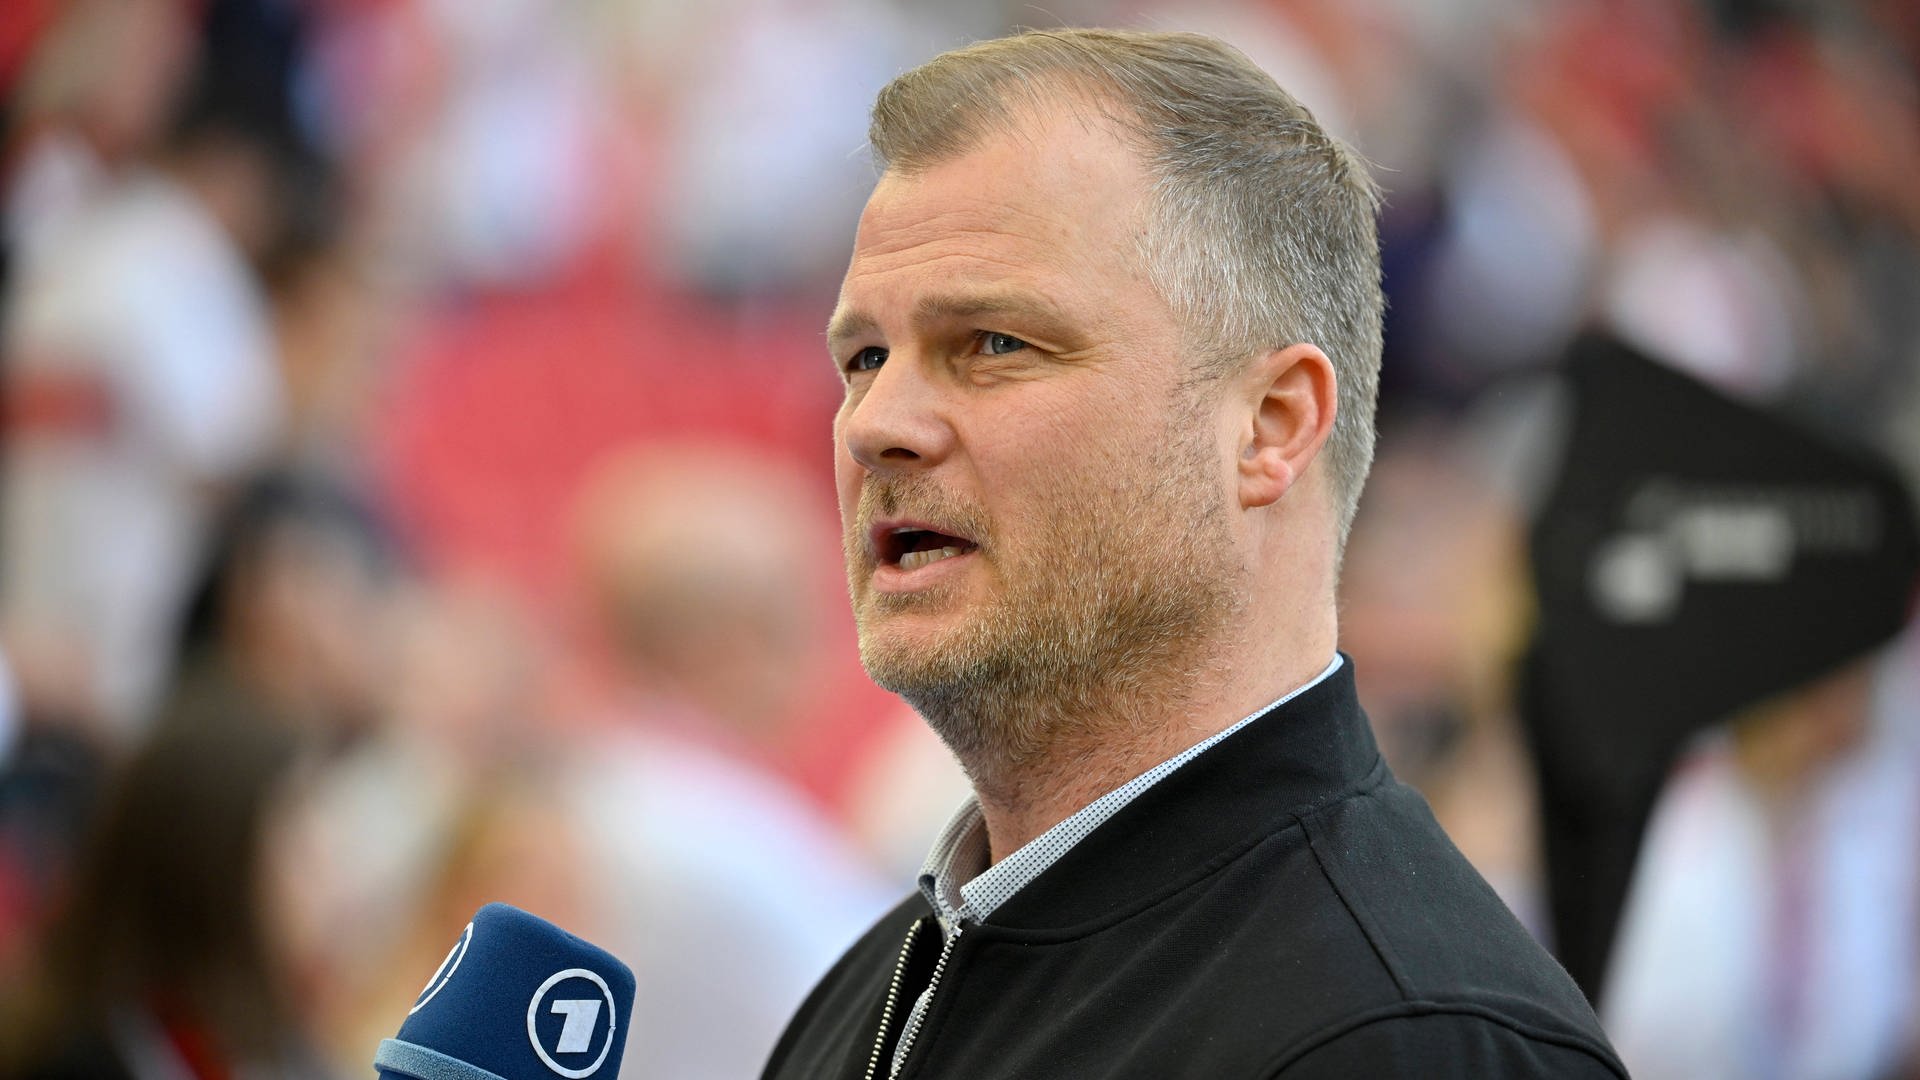 VfB Stuttgart: Millionenspiel Champions League als Turbo für die Kaderplanung?